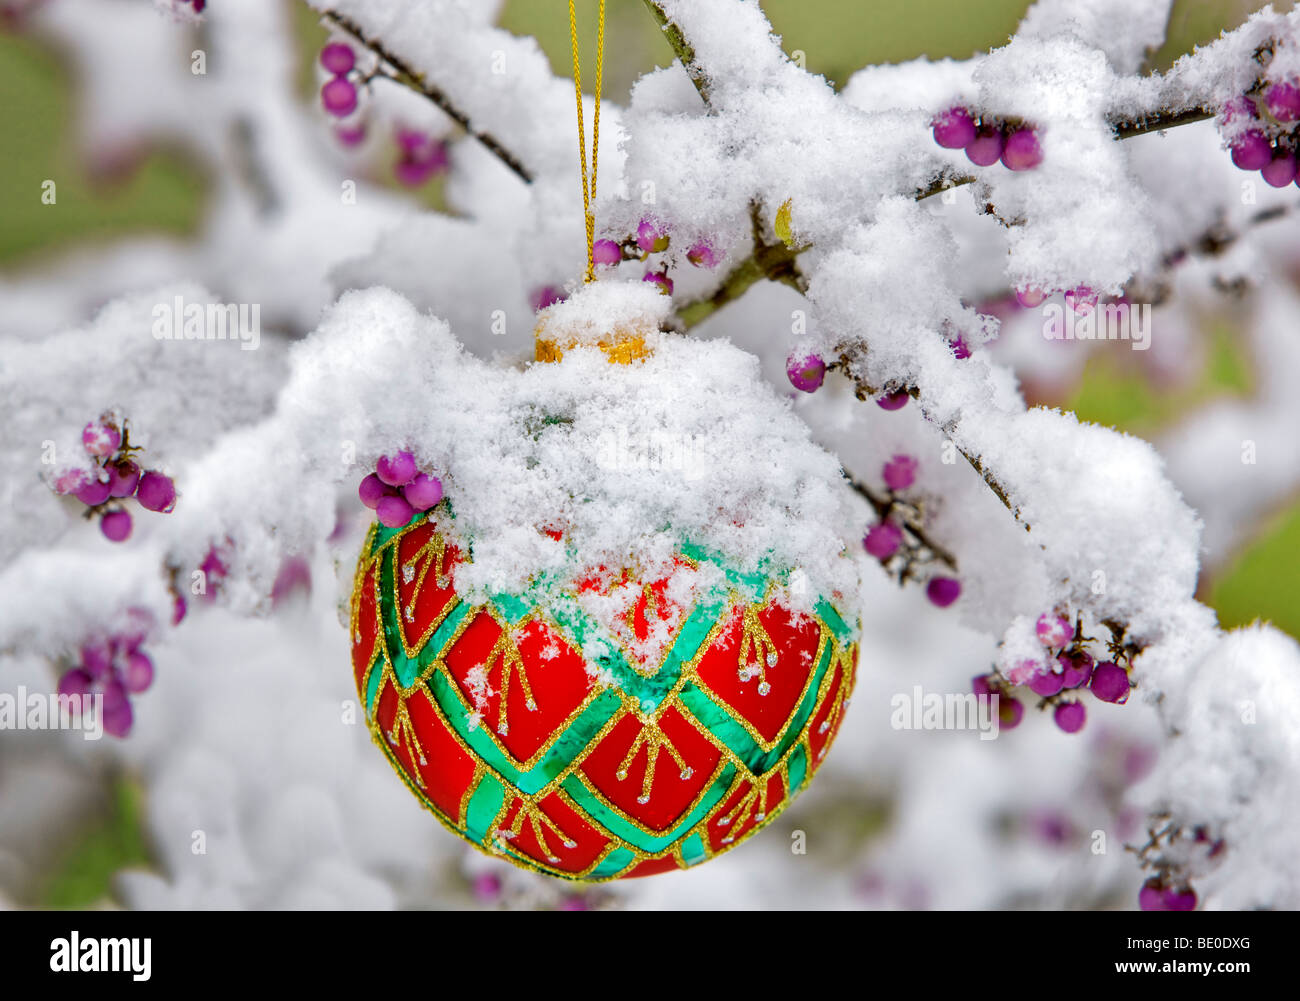 Ornement d'arbre de Noël dans la neige avec des baies pourpre Bush de beauté. Banque D'Images